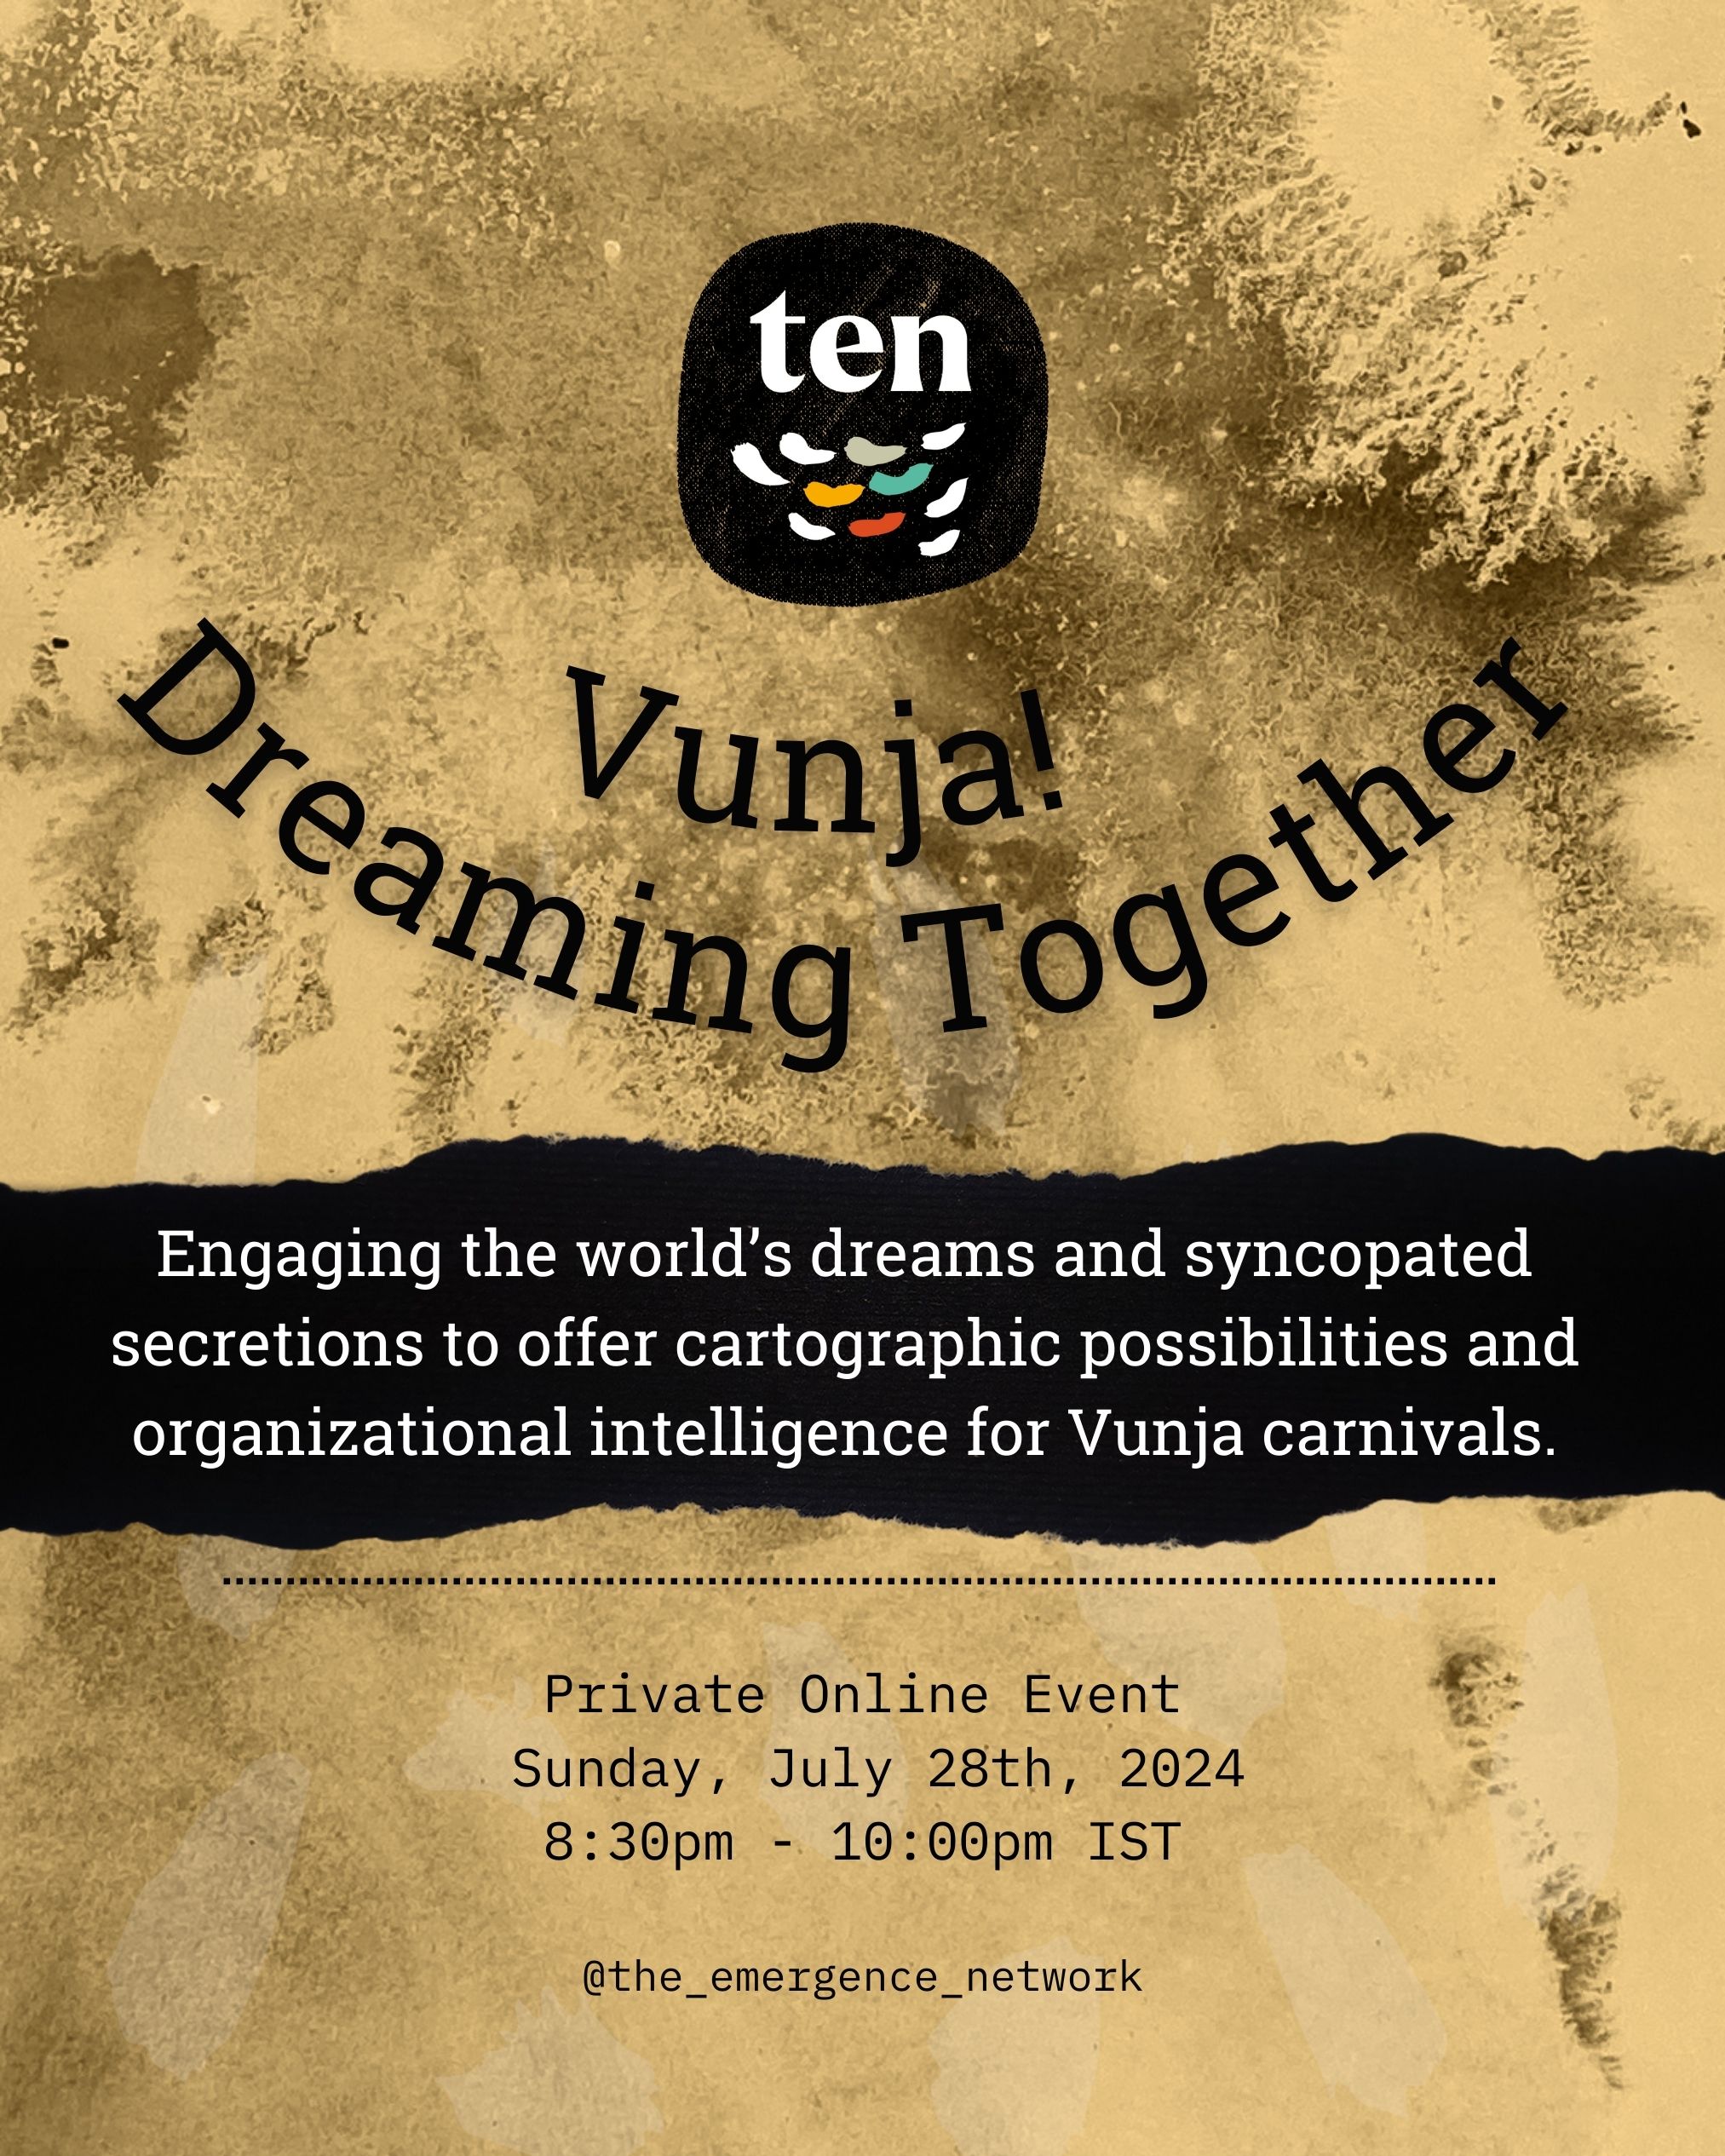 Vunja! Dreaming Together Session VI